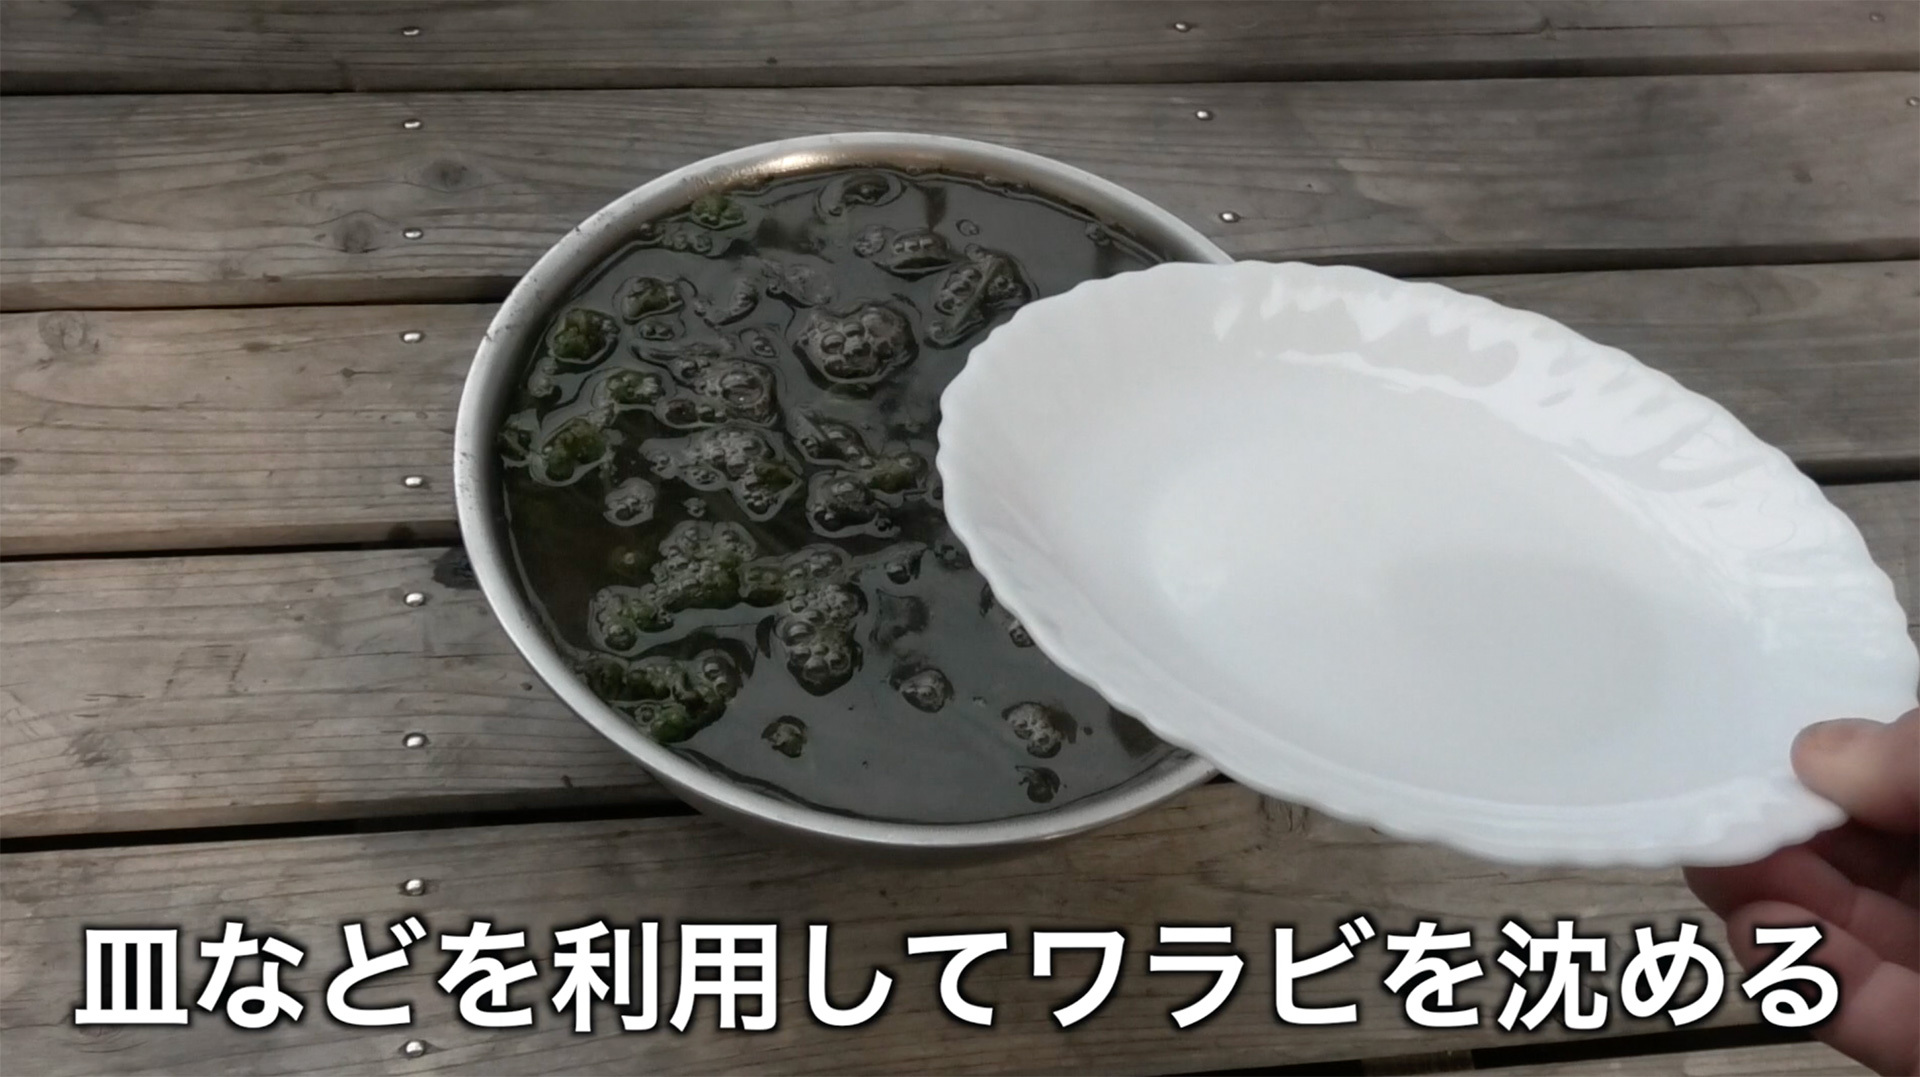 ワラビが浮き上がって熱湯から出るようなら皿などで落し蓋をして沈める